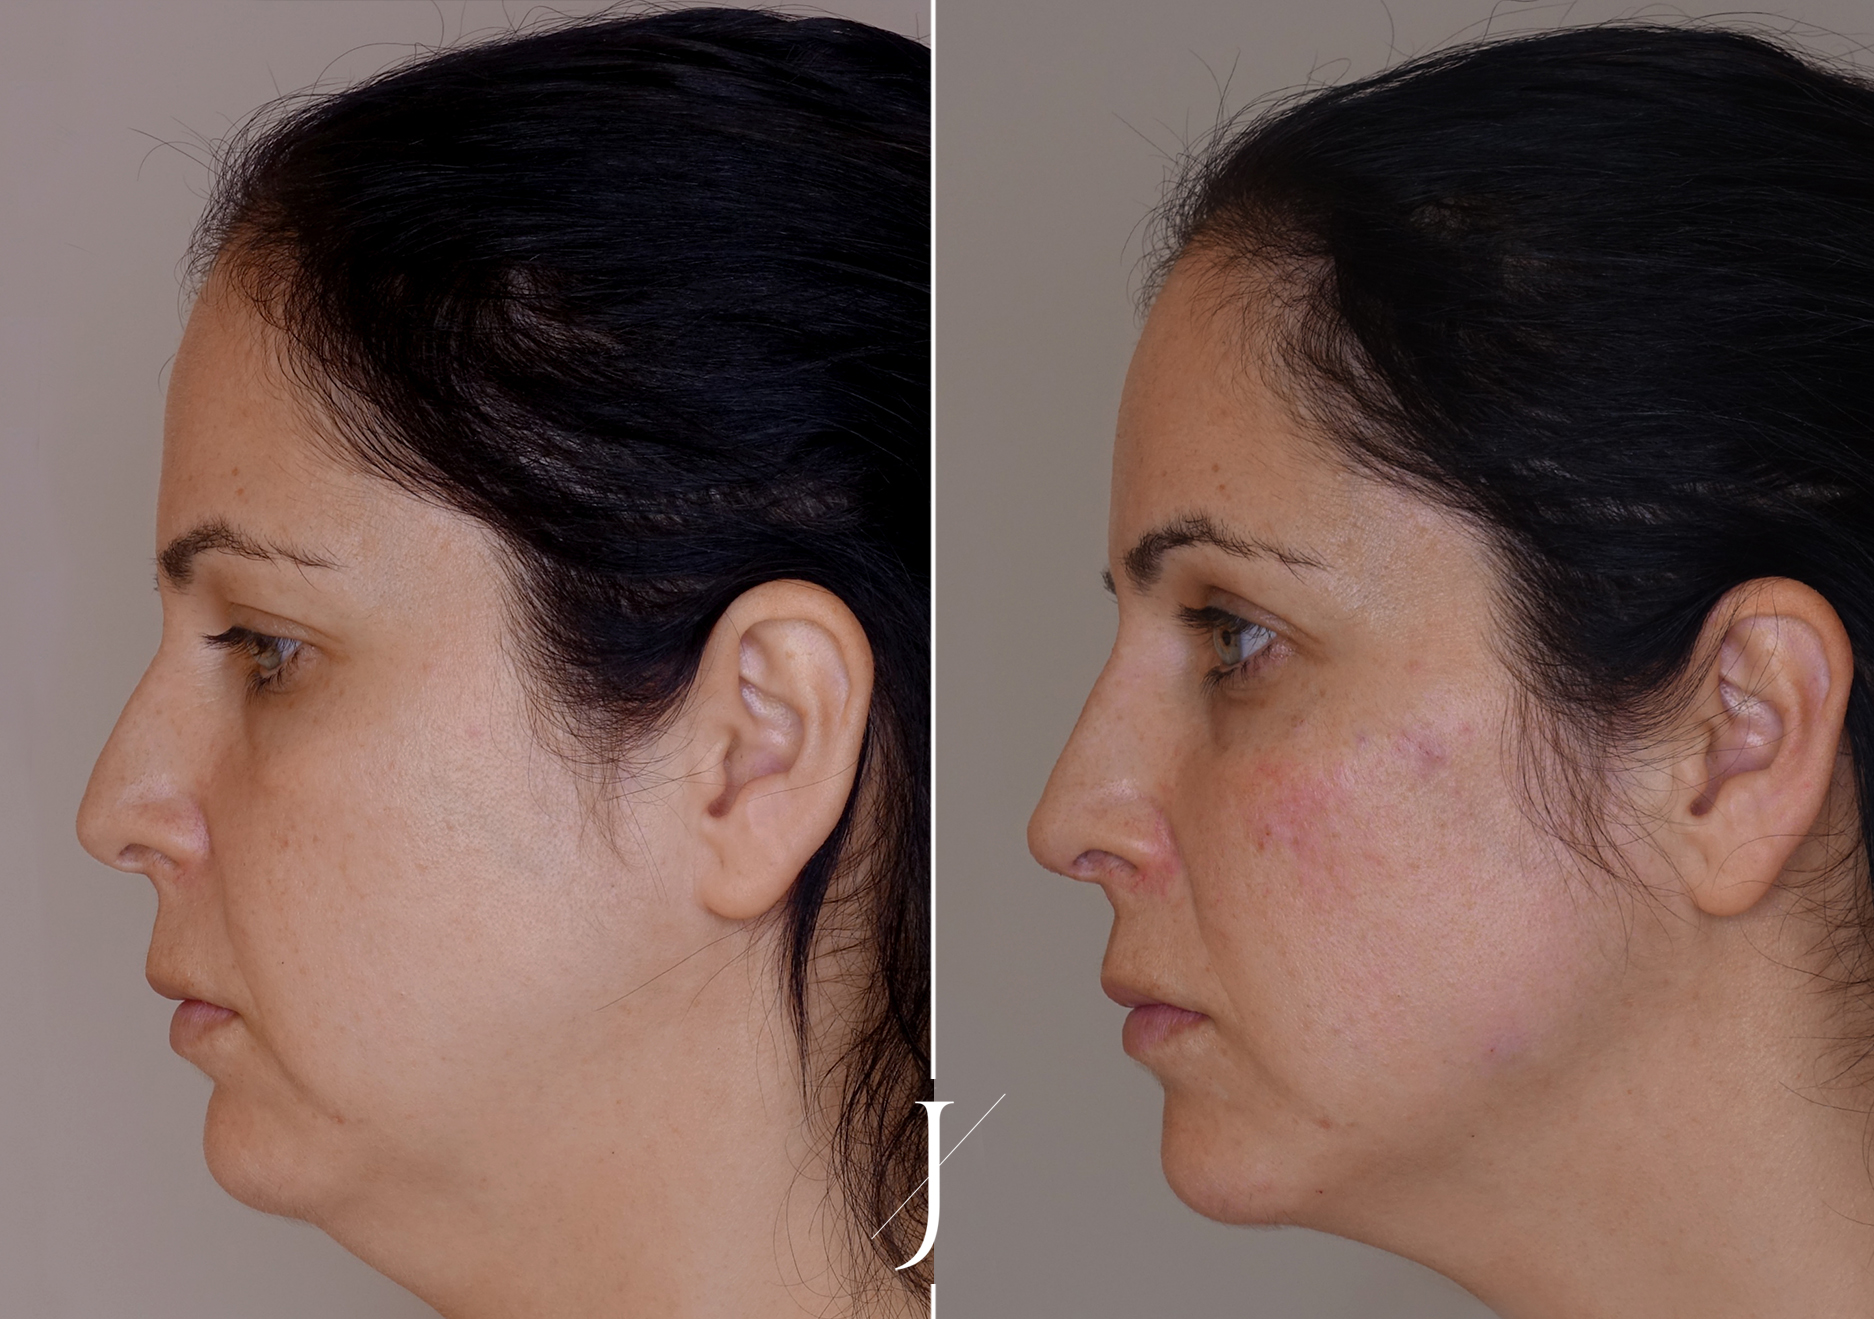 Tratamiento estética neutralización facial caso clínico antes y después